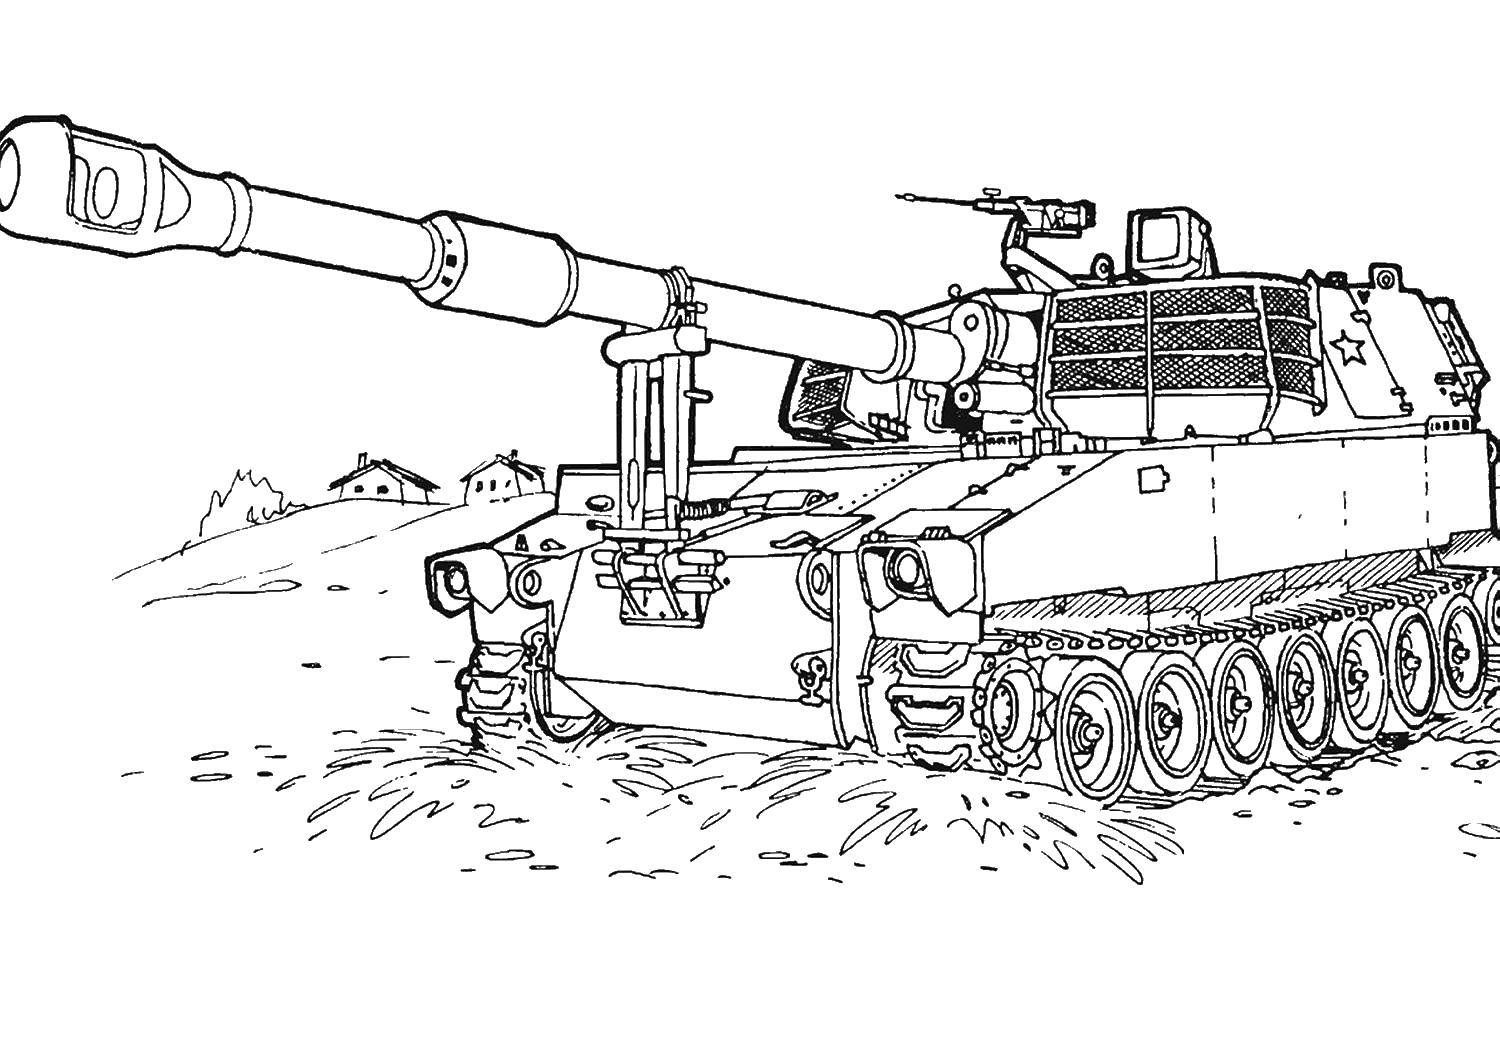 Розмальовки  Танк тип 74. Завантажити розмальовку танк.  Роздрукувати ,військові розмальовки,